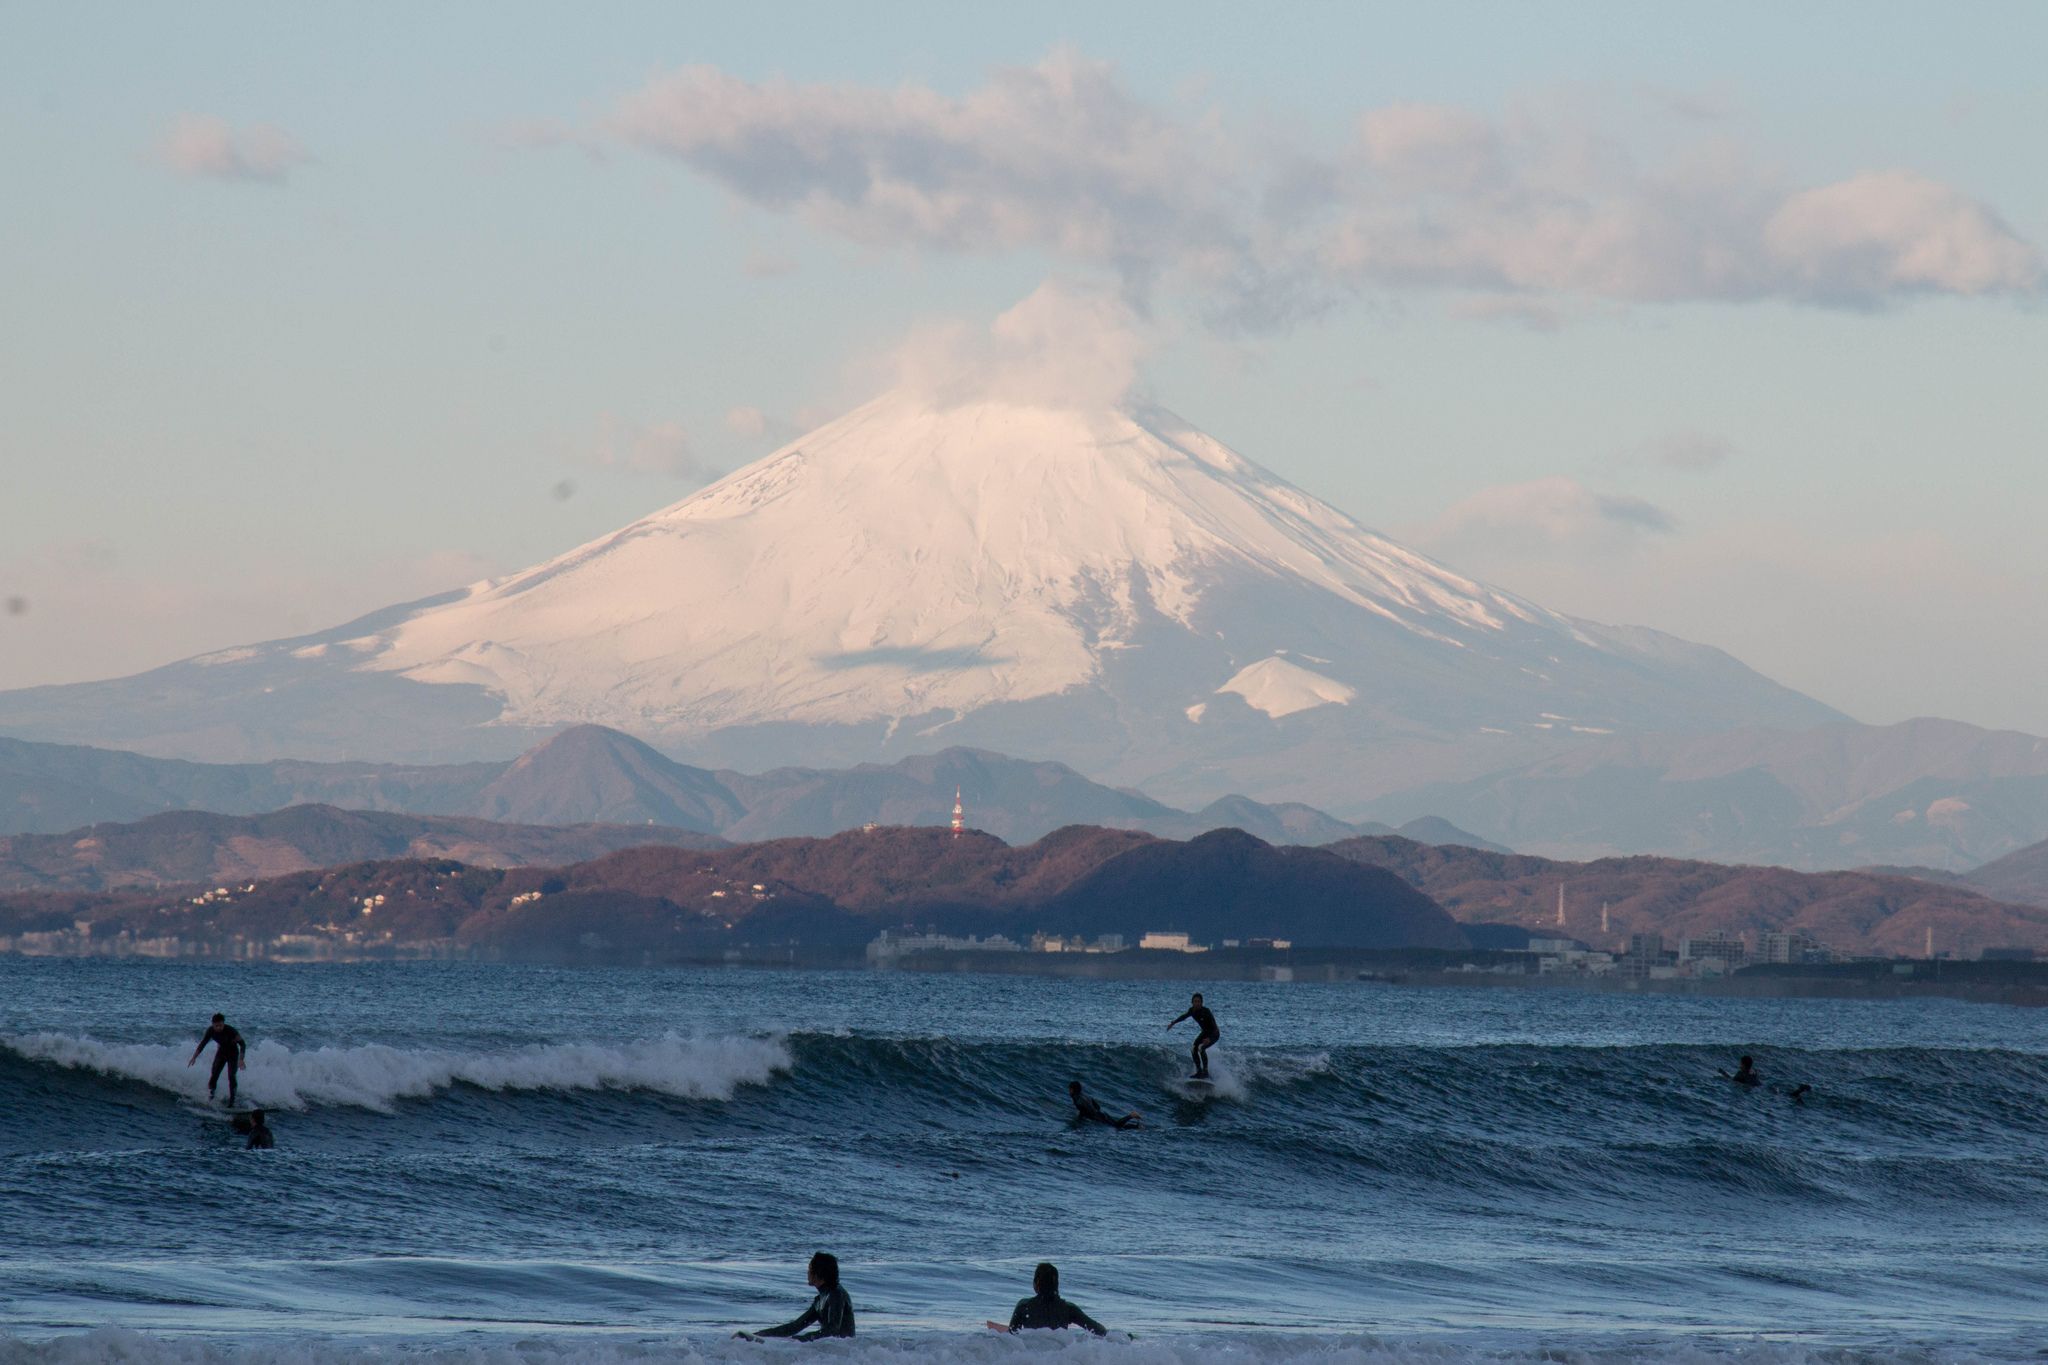 Surfing in Kamakura, Japan